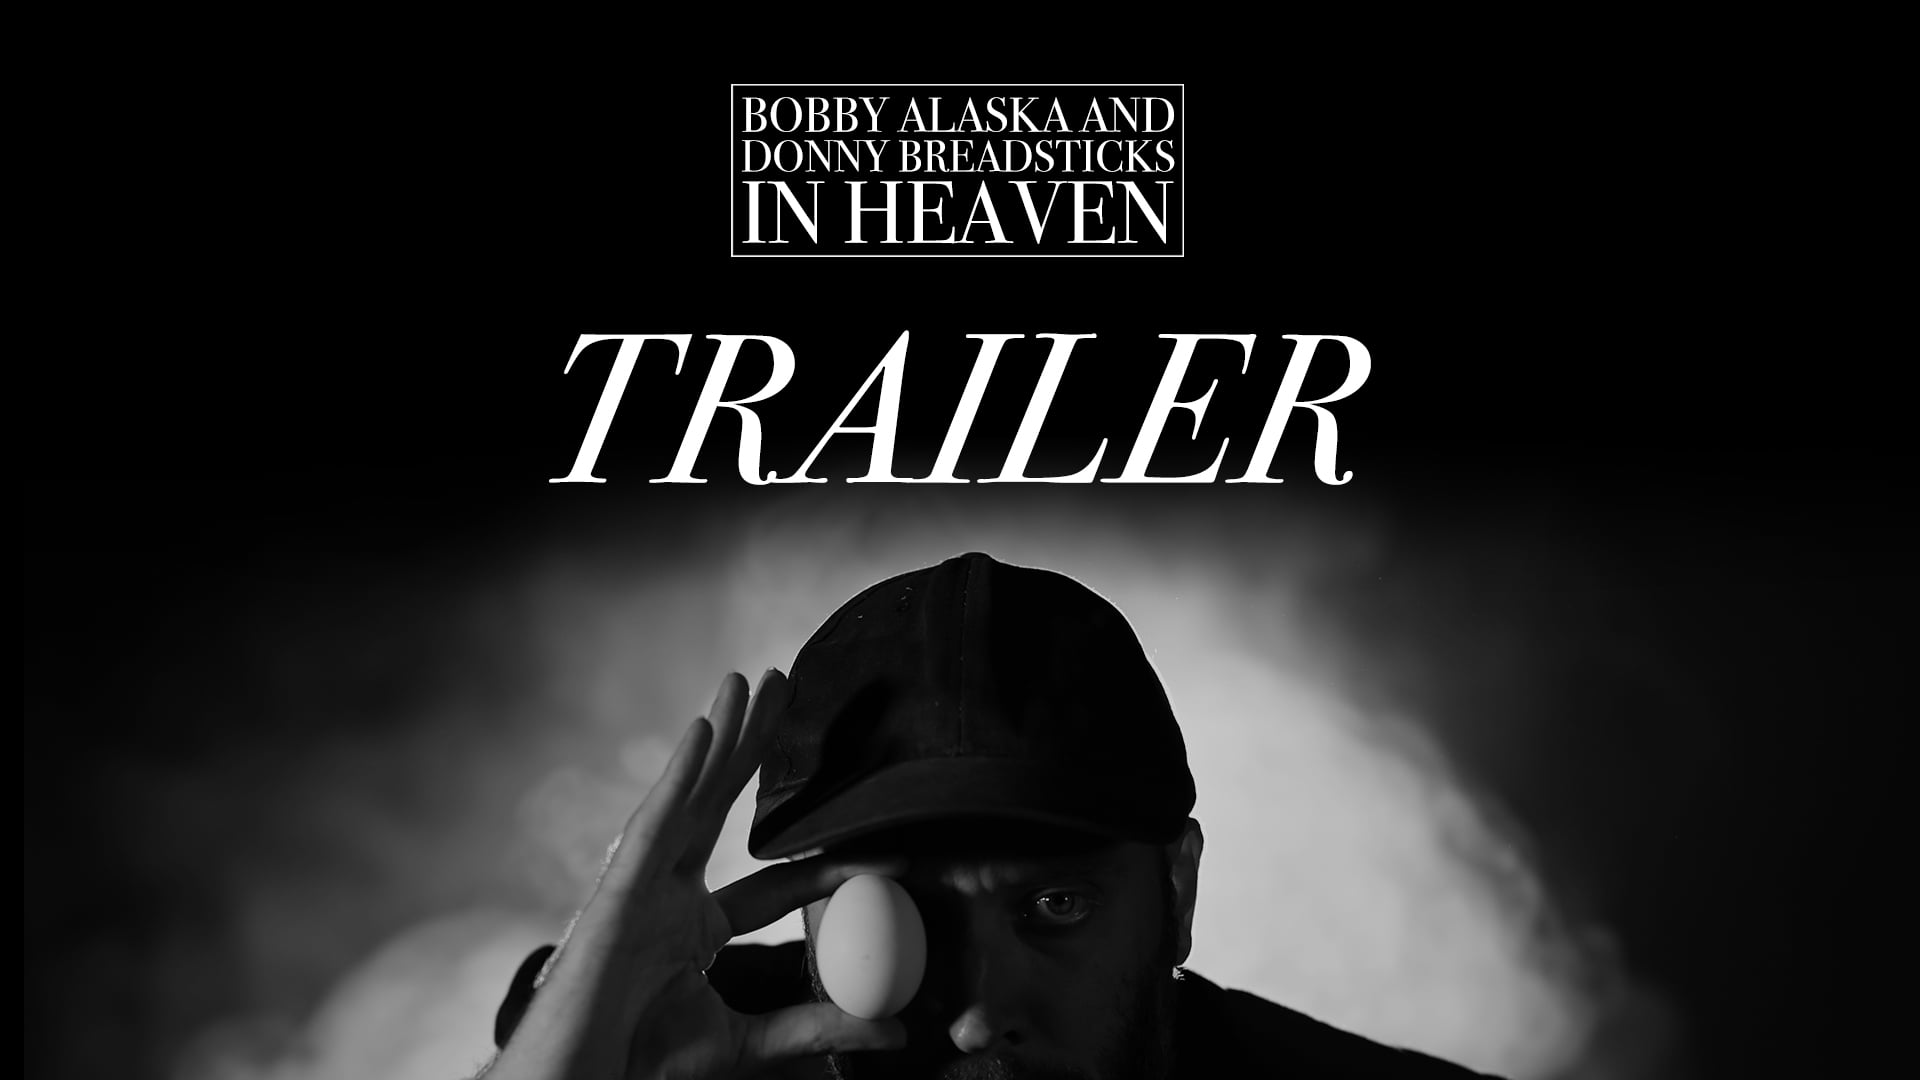 Bobby Alaska and Donny Breadsticks in Heaven [trailer]